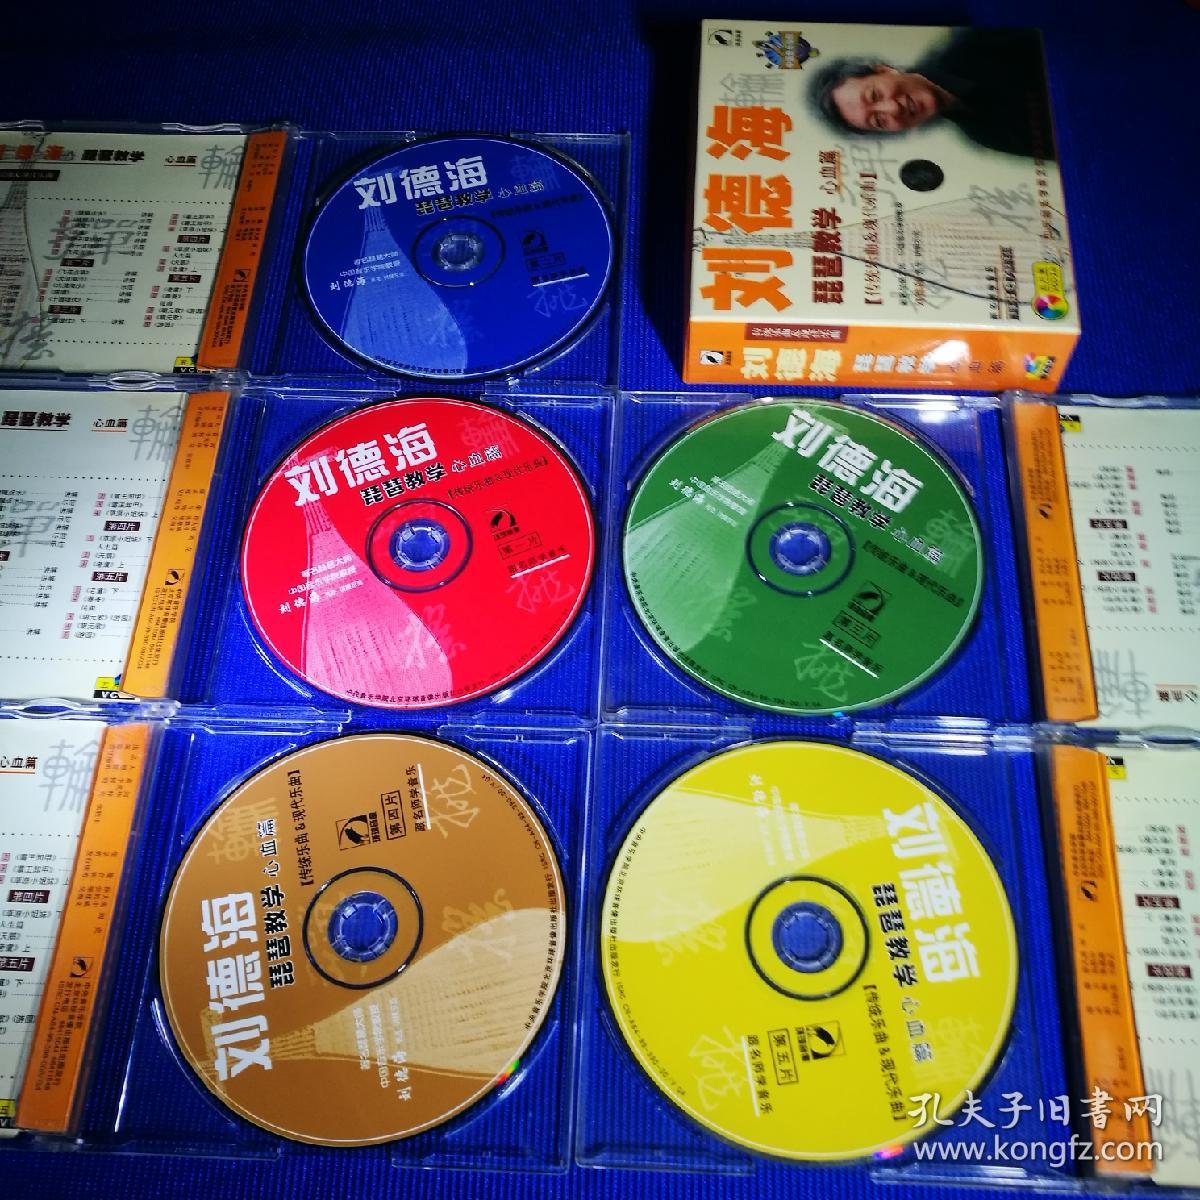 刘德海 琵琶教学 心血篇 【传统乐曲+现代乐曲】VCD (5碟装)